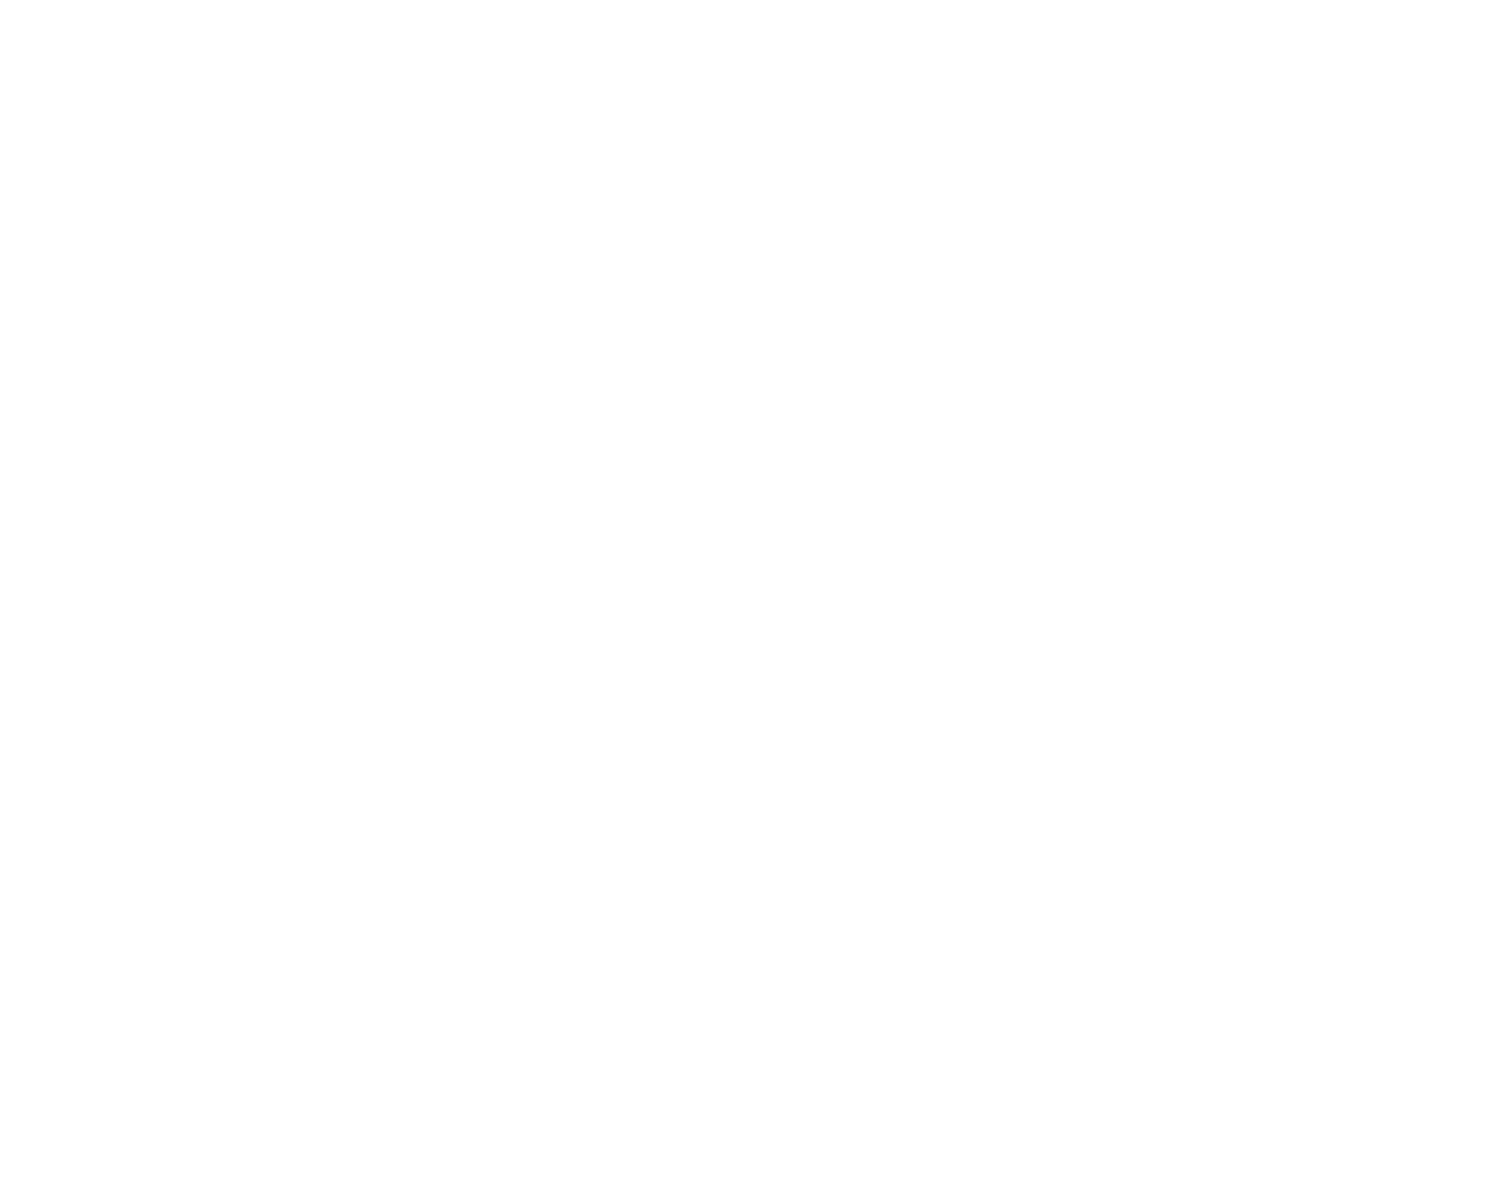 Port of Tauranga logo pour fonds sombres (PNG transparent)